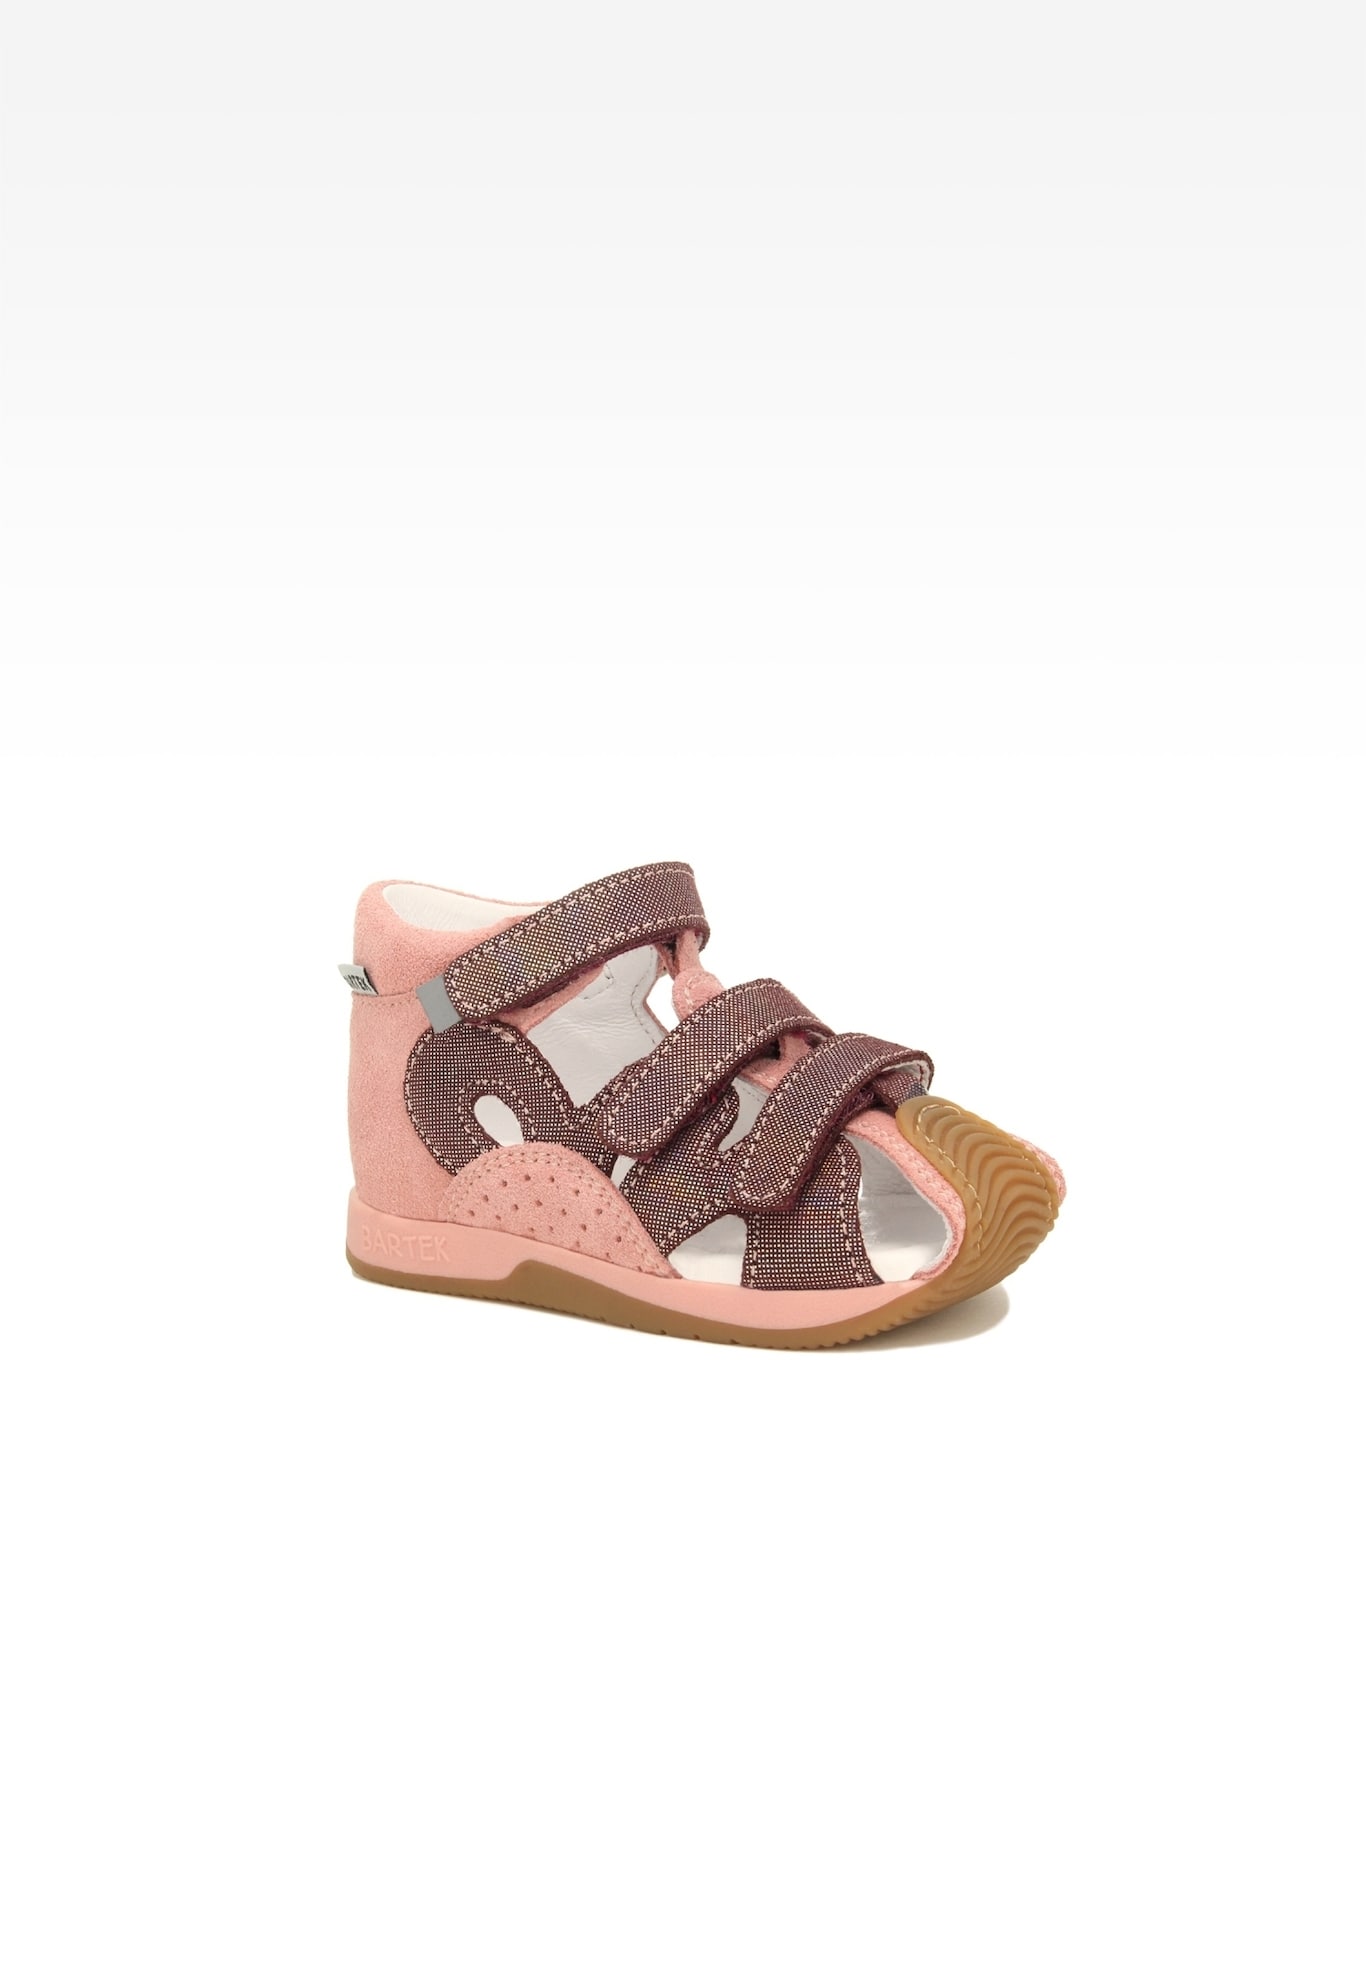 Sandały BARTEK 081021-007 II, dla dziewcząt, różowo-bordowy